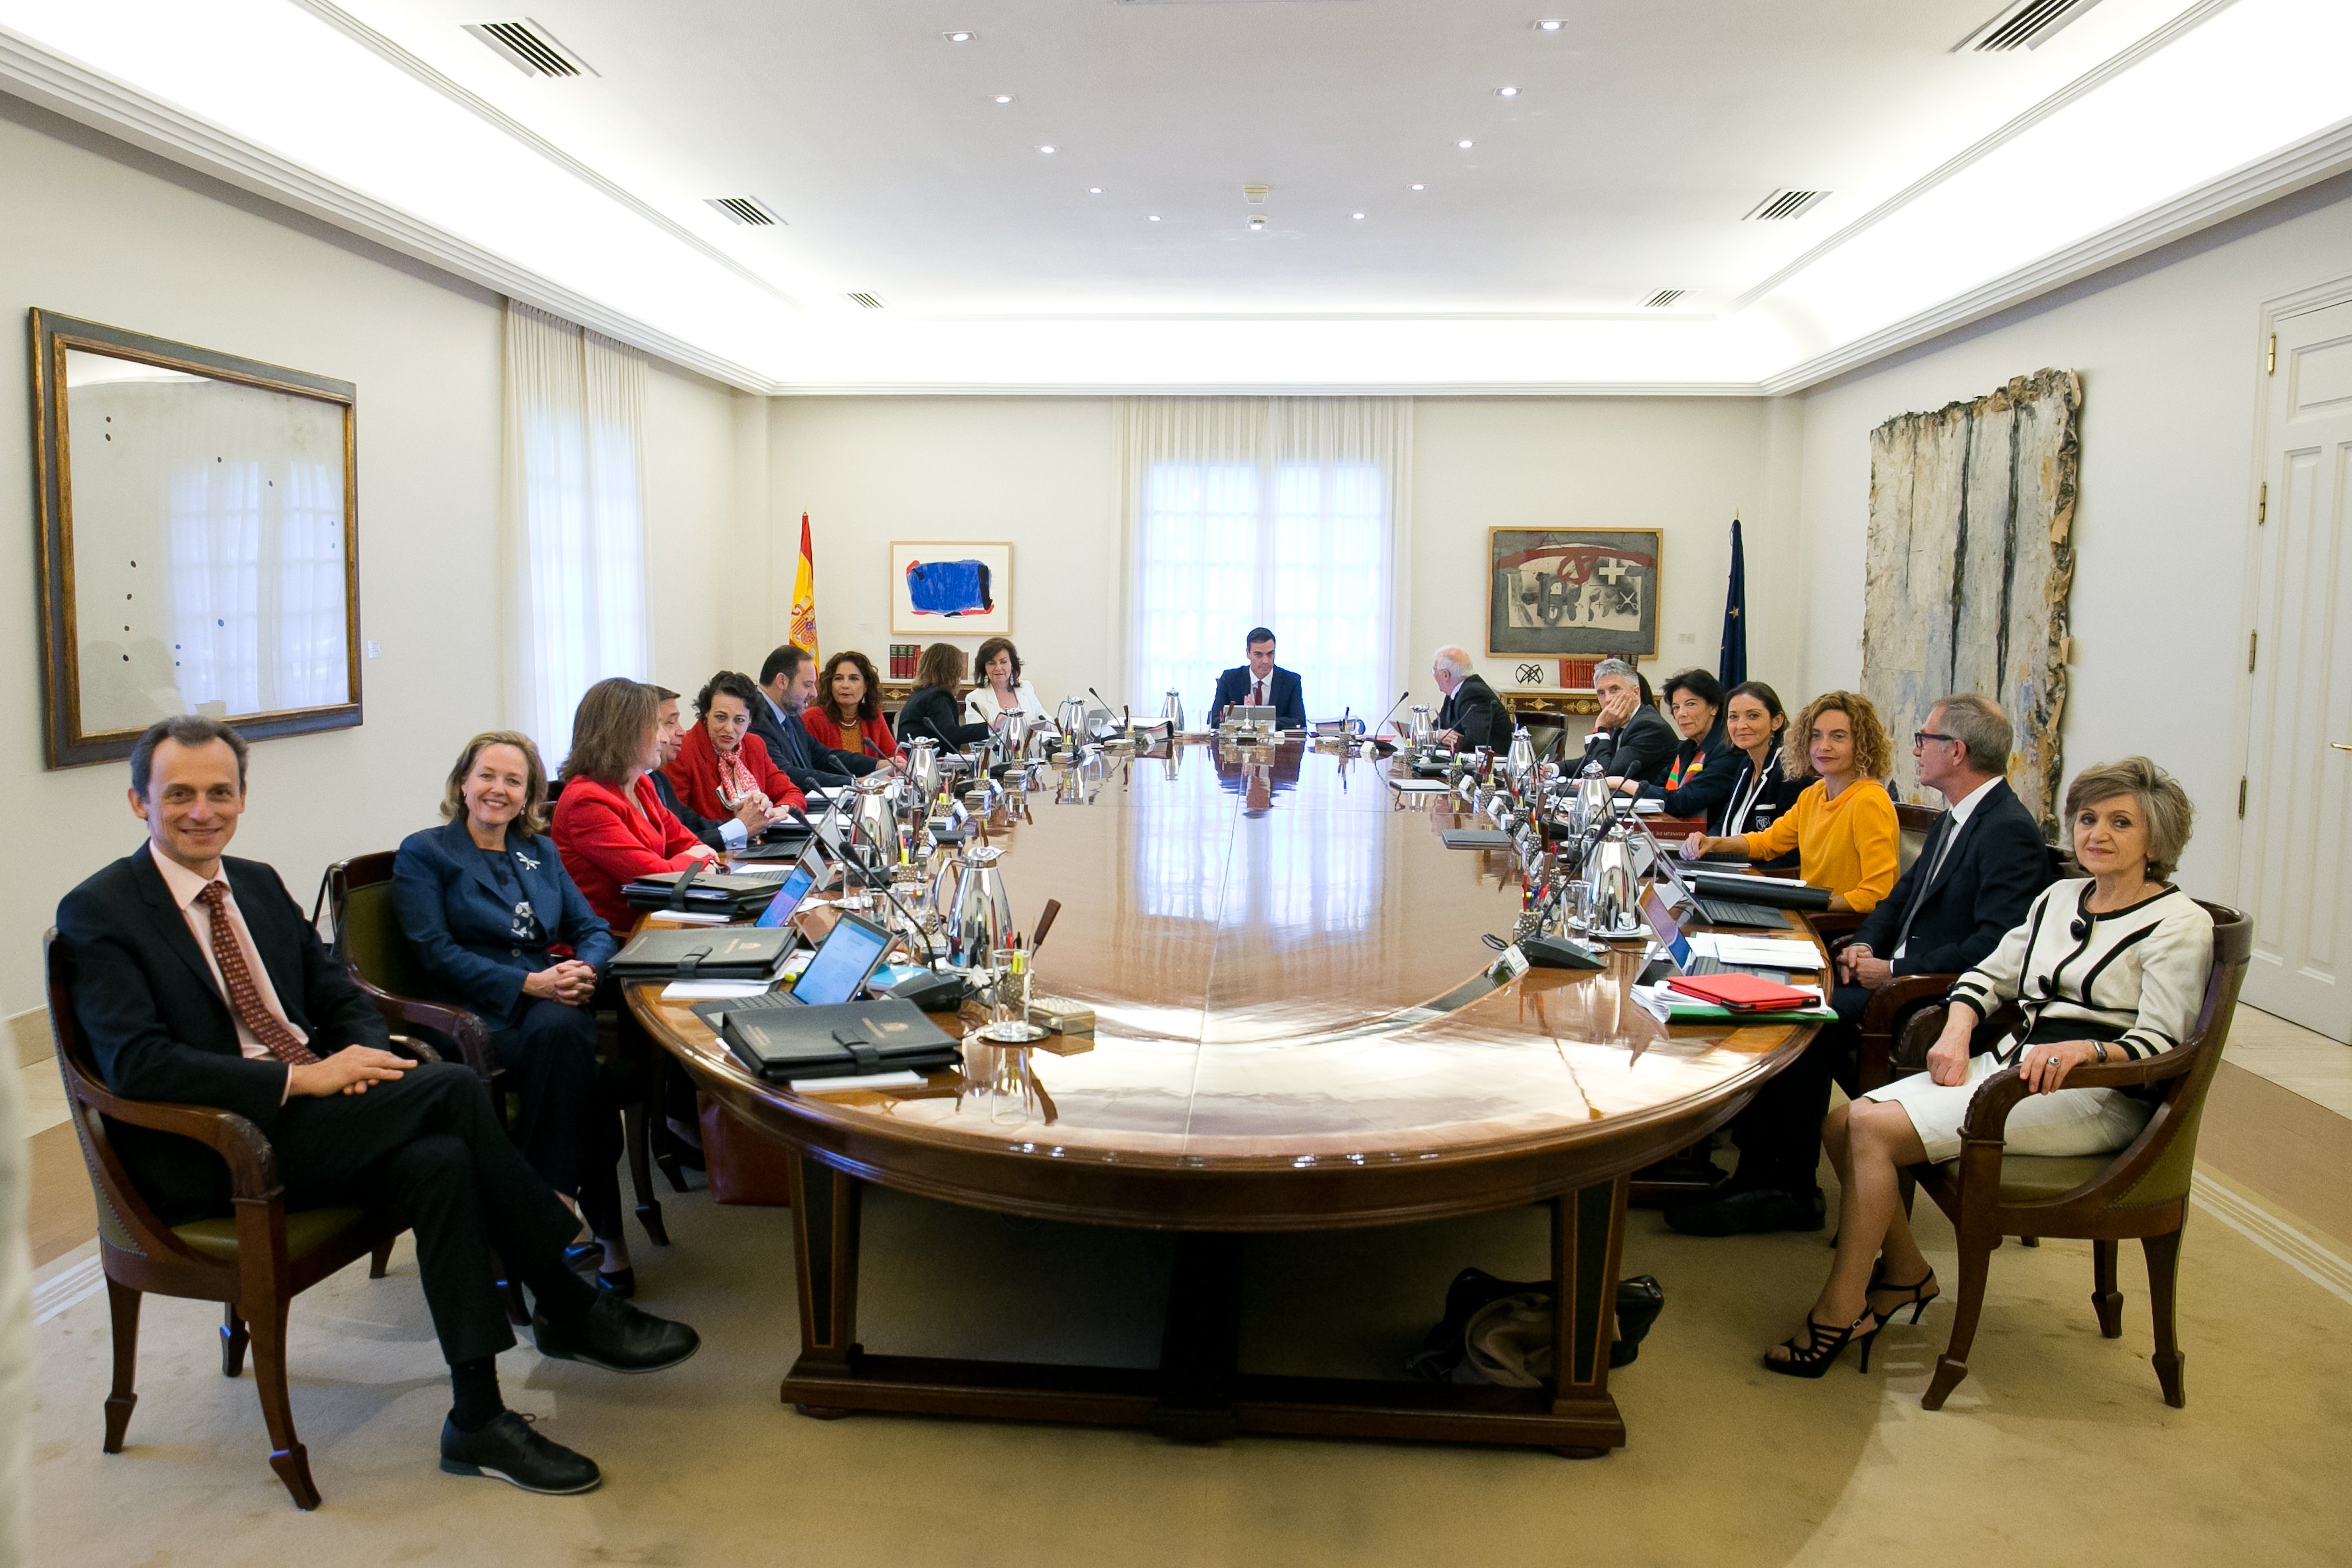 Aproves les mobilitzacions contra el Consell de Ministres del 21-D a Barcelona?